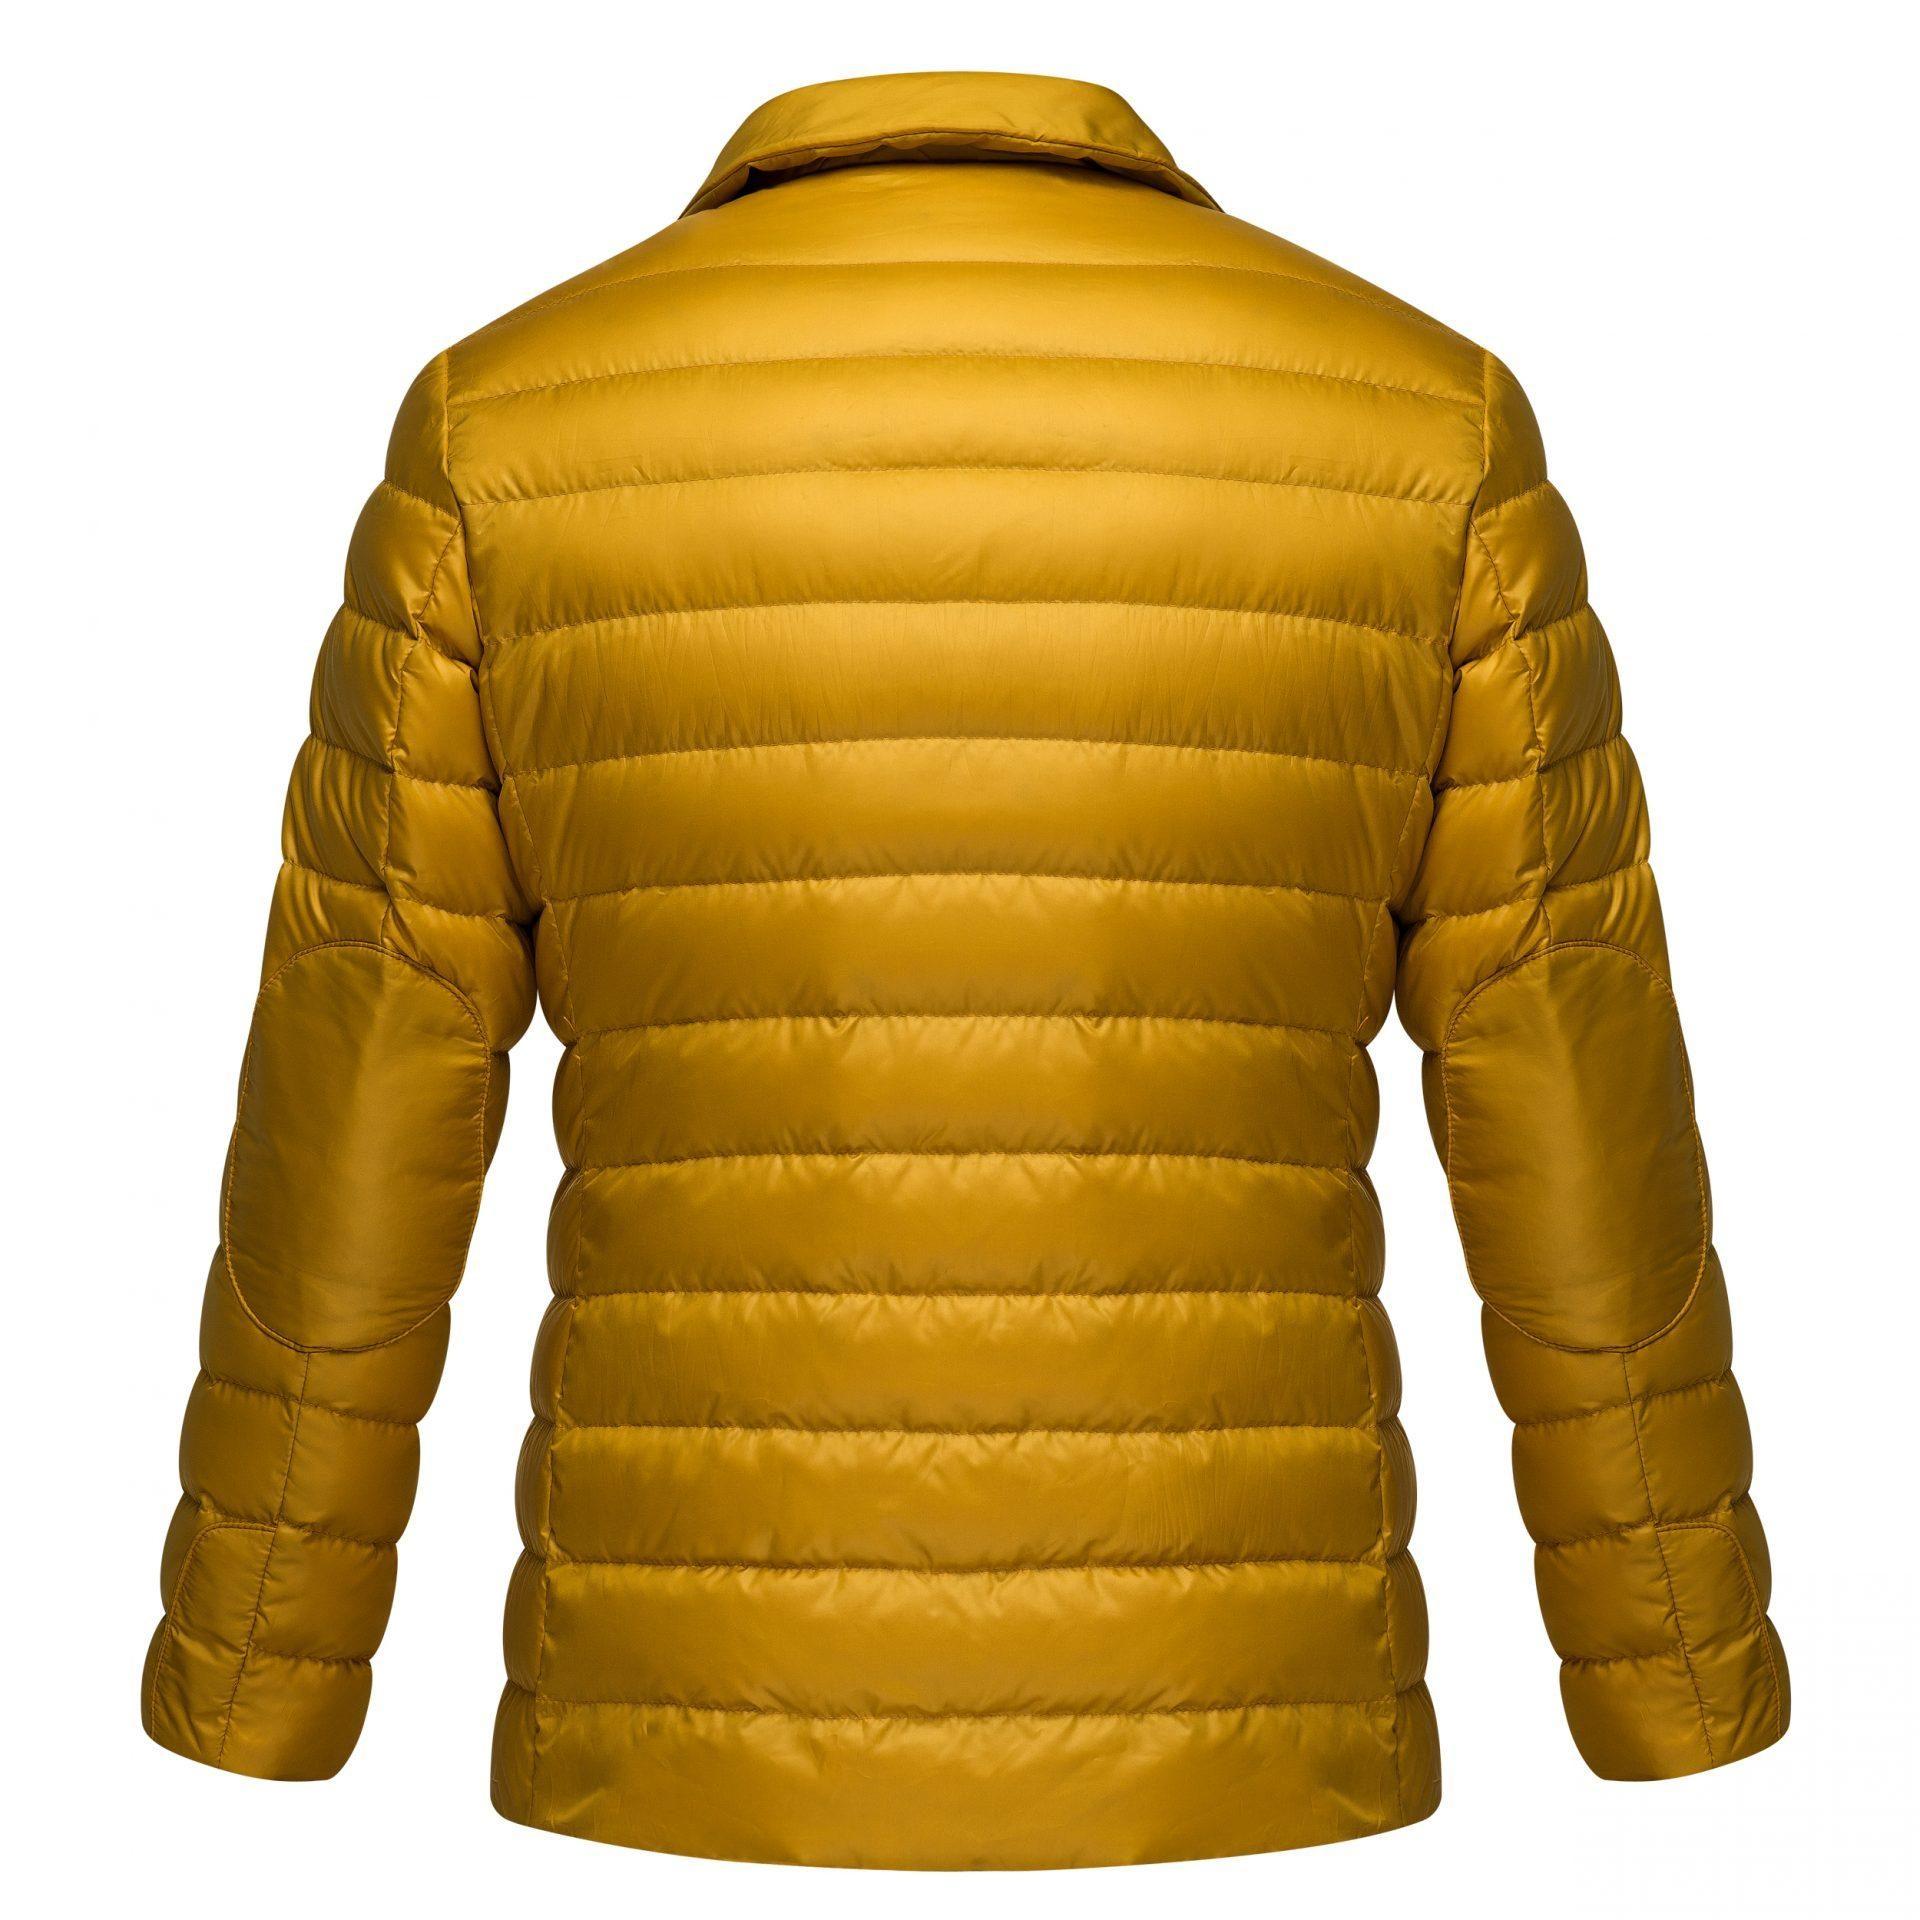 Men’s jacket mustard